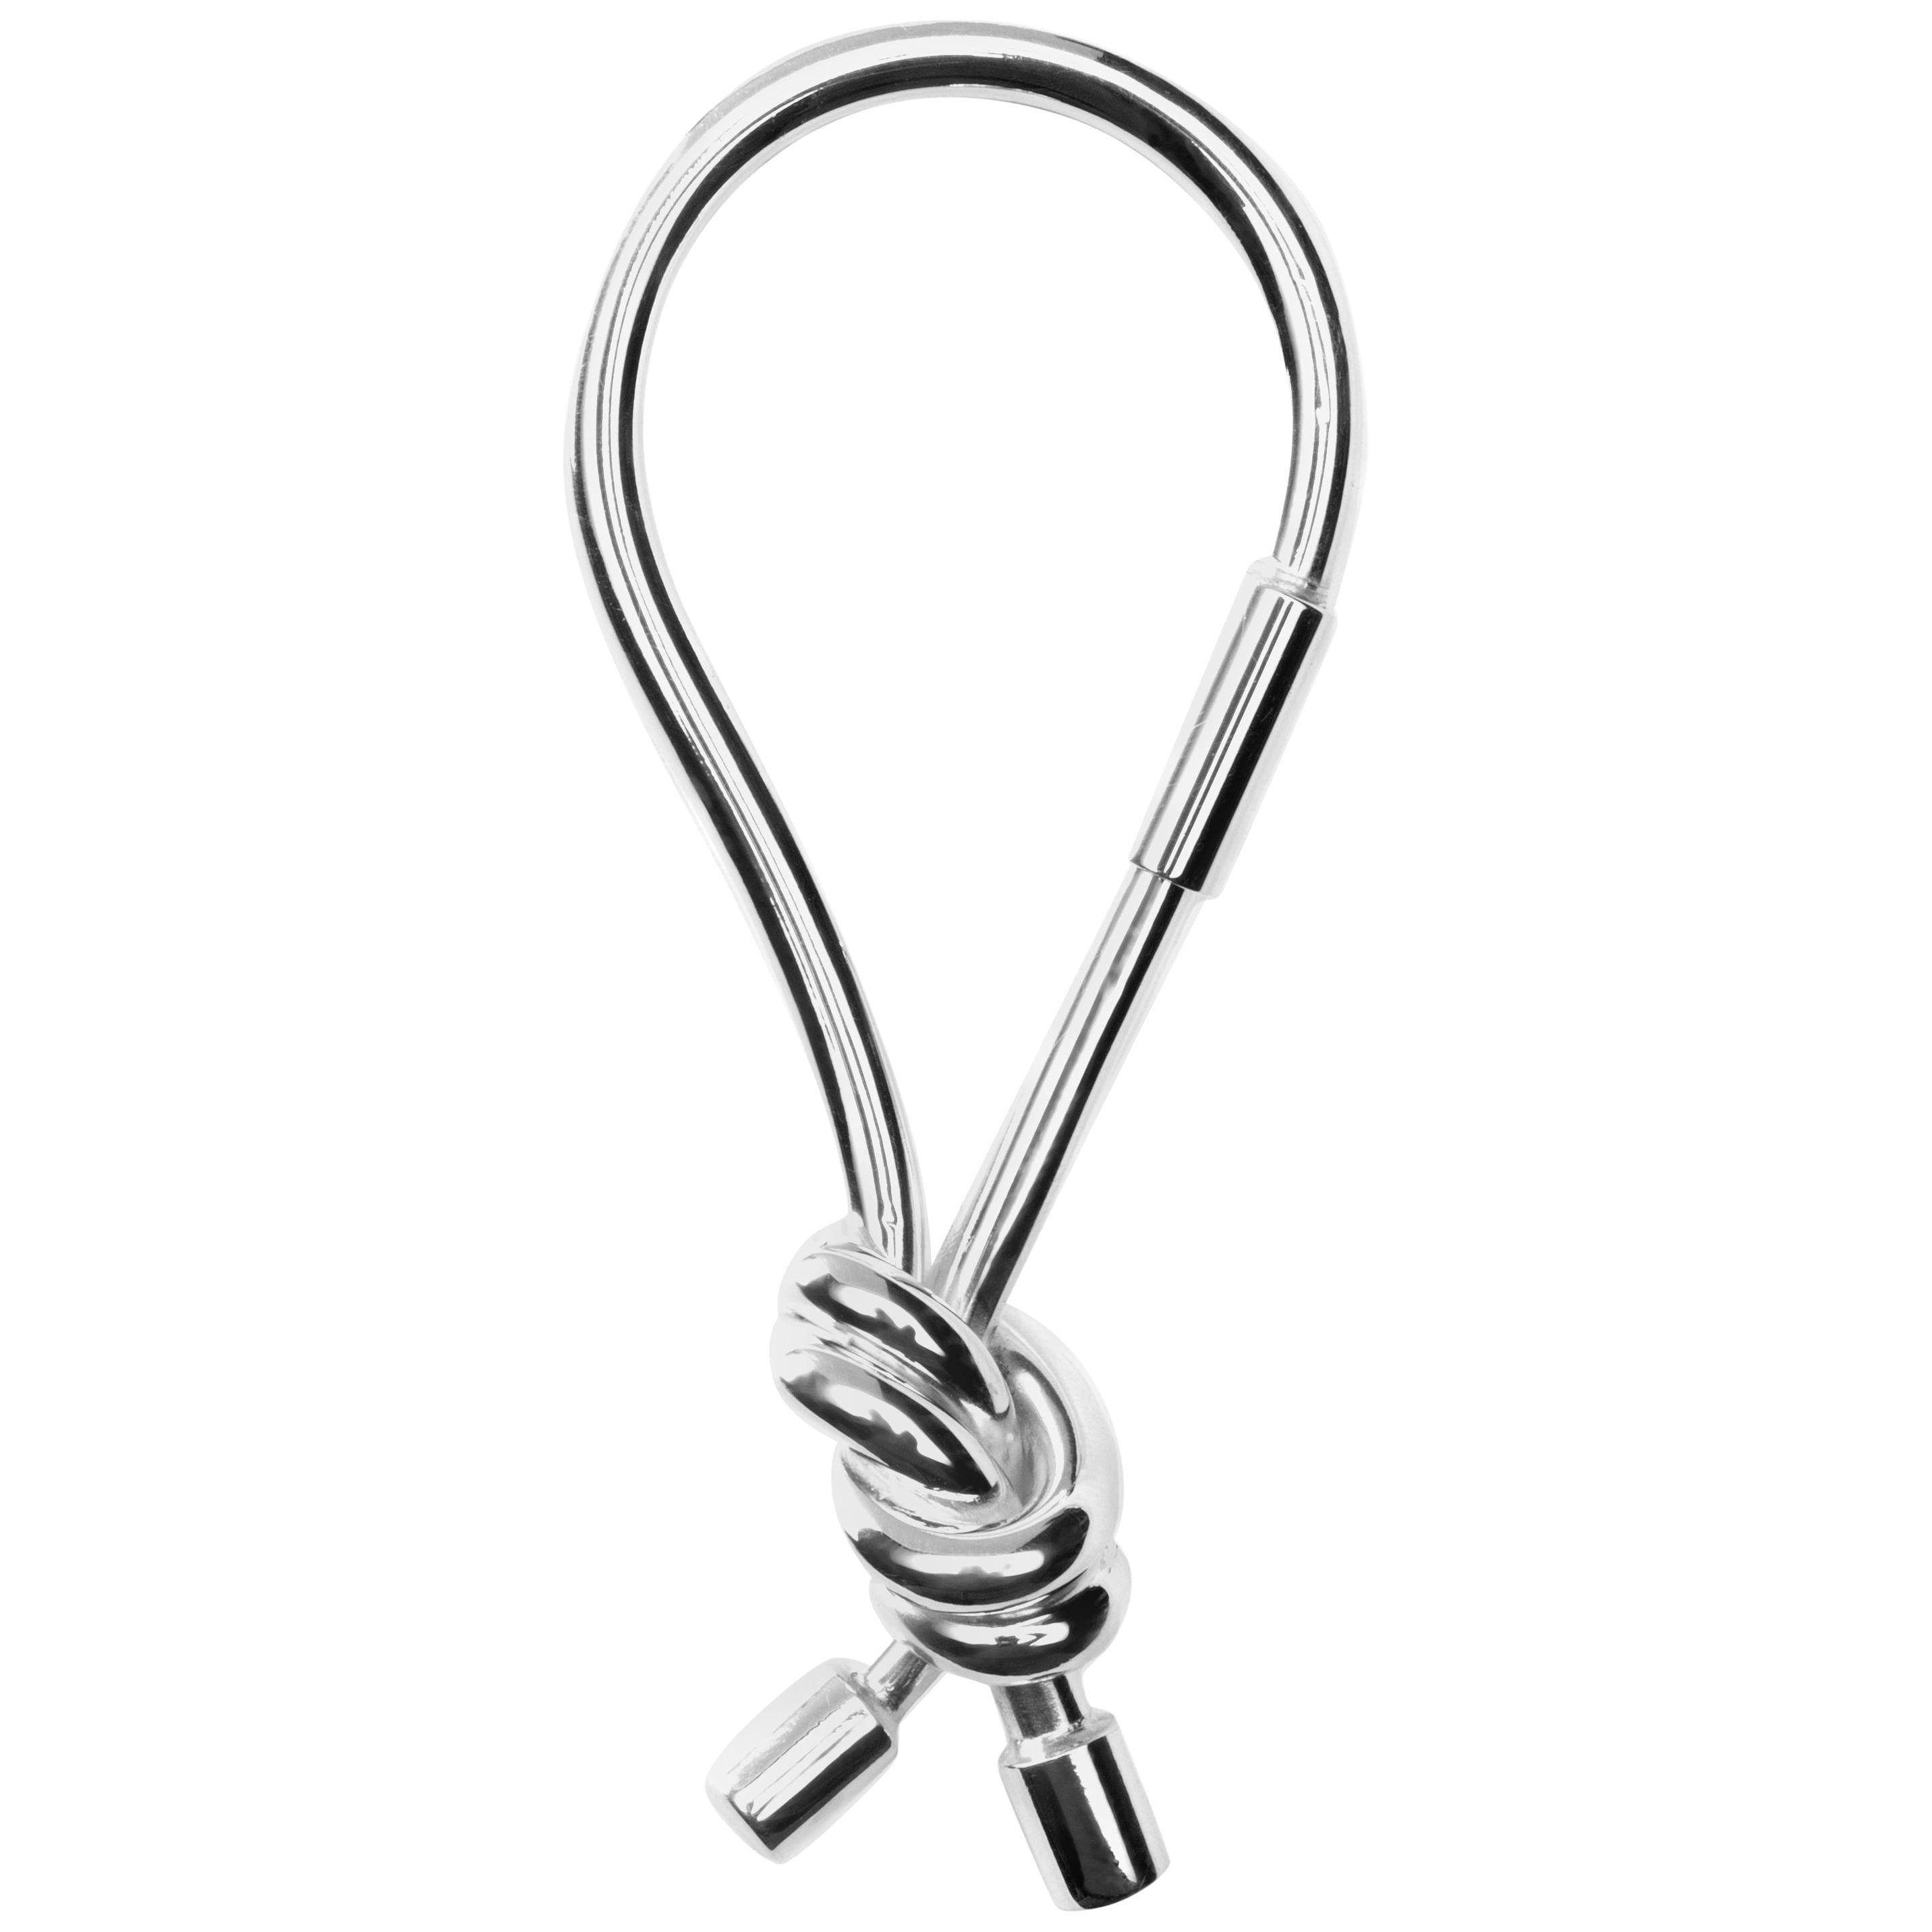 Sterlingsilber-Schlüsselanhänger mit marineblauem Knoten